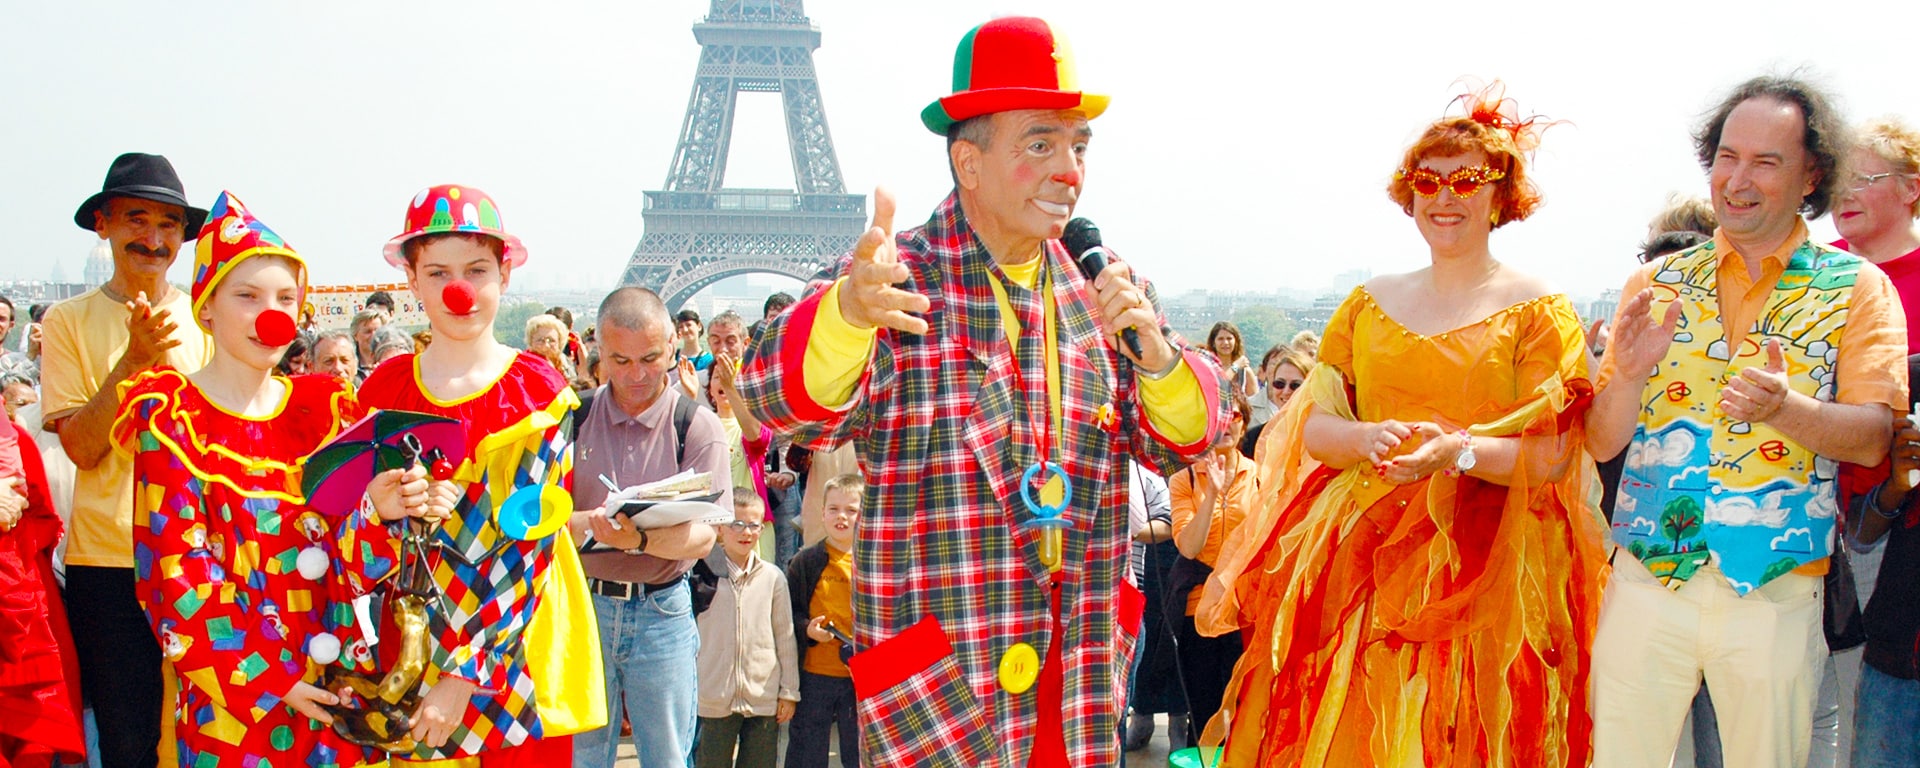 Remise du Rire d'Or à Kinou le Clown à Paris par Corinne et Frédéric Cosseron